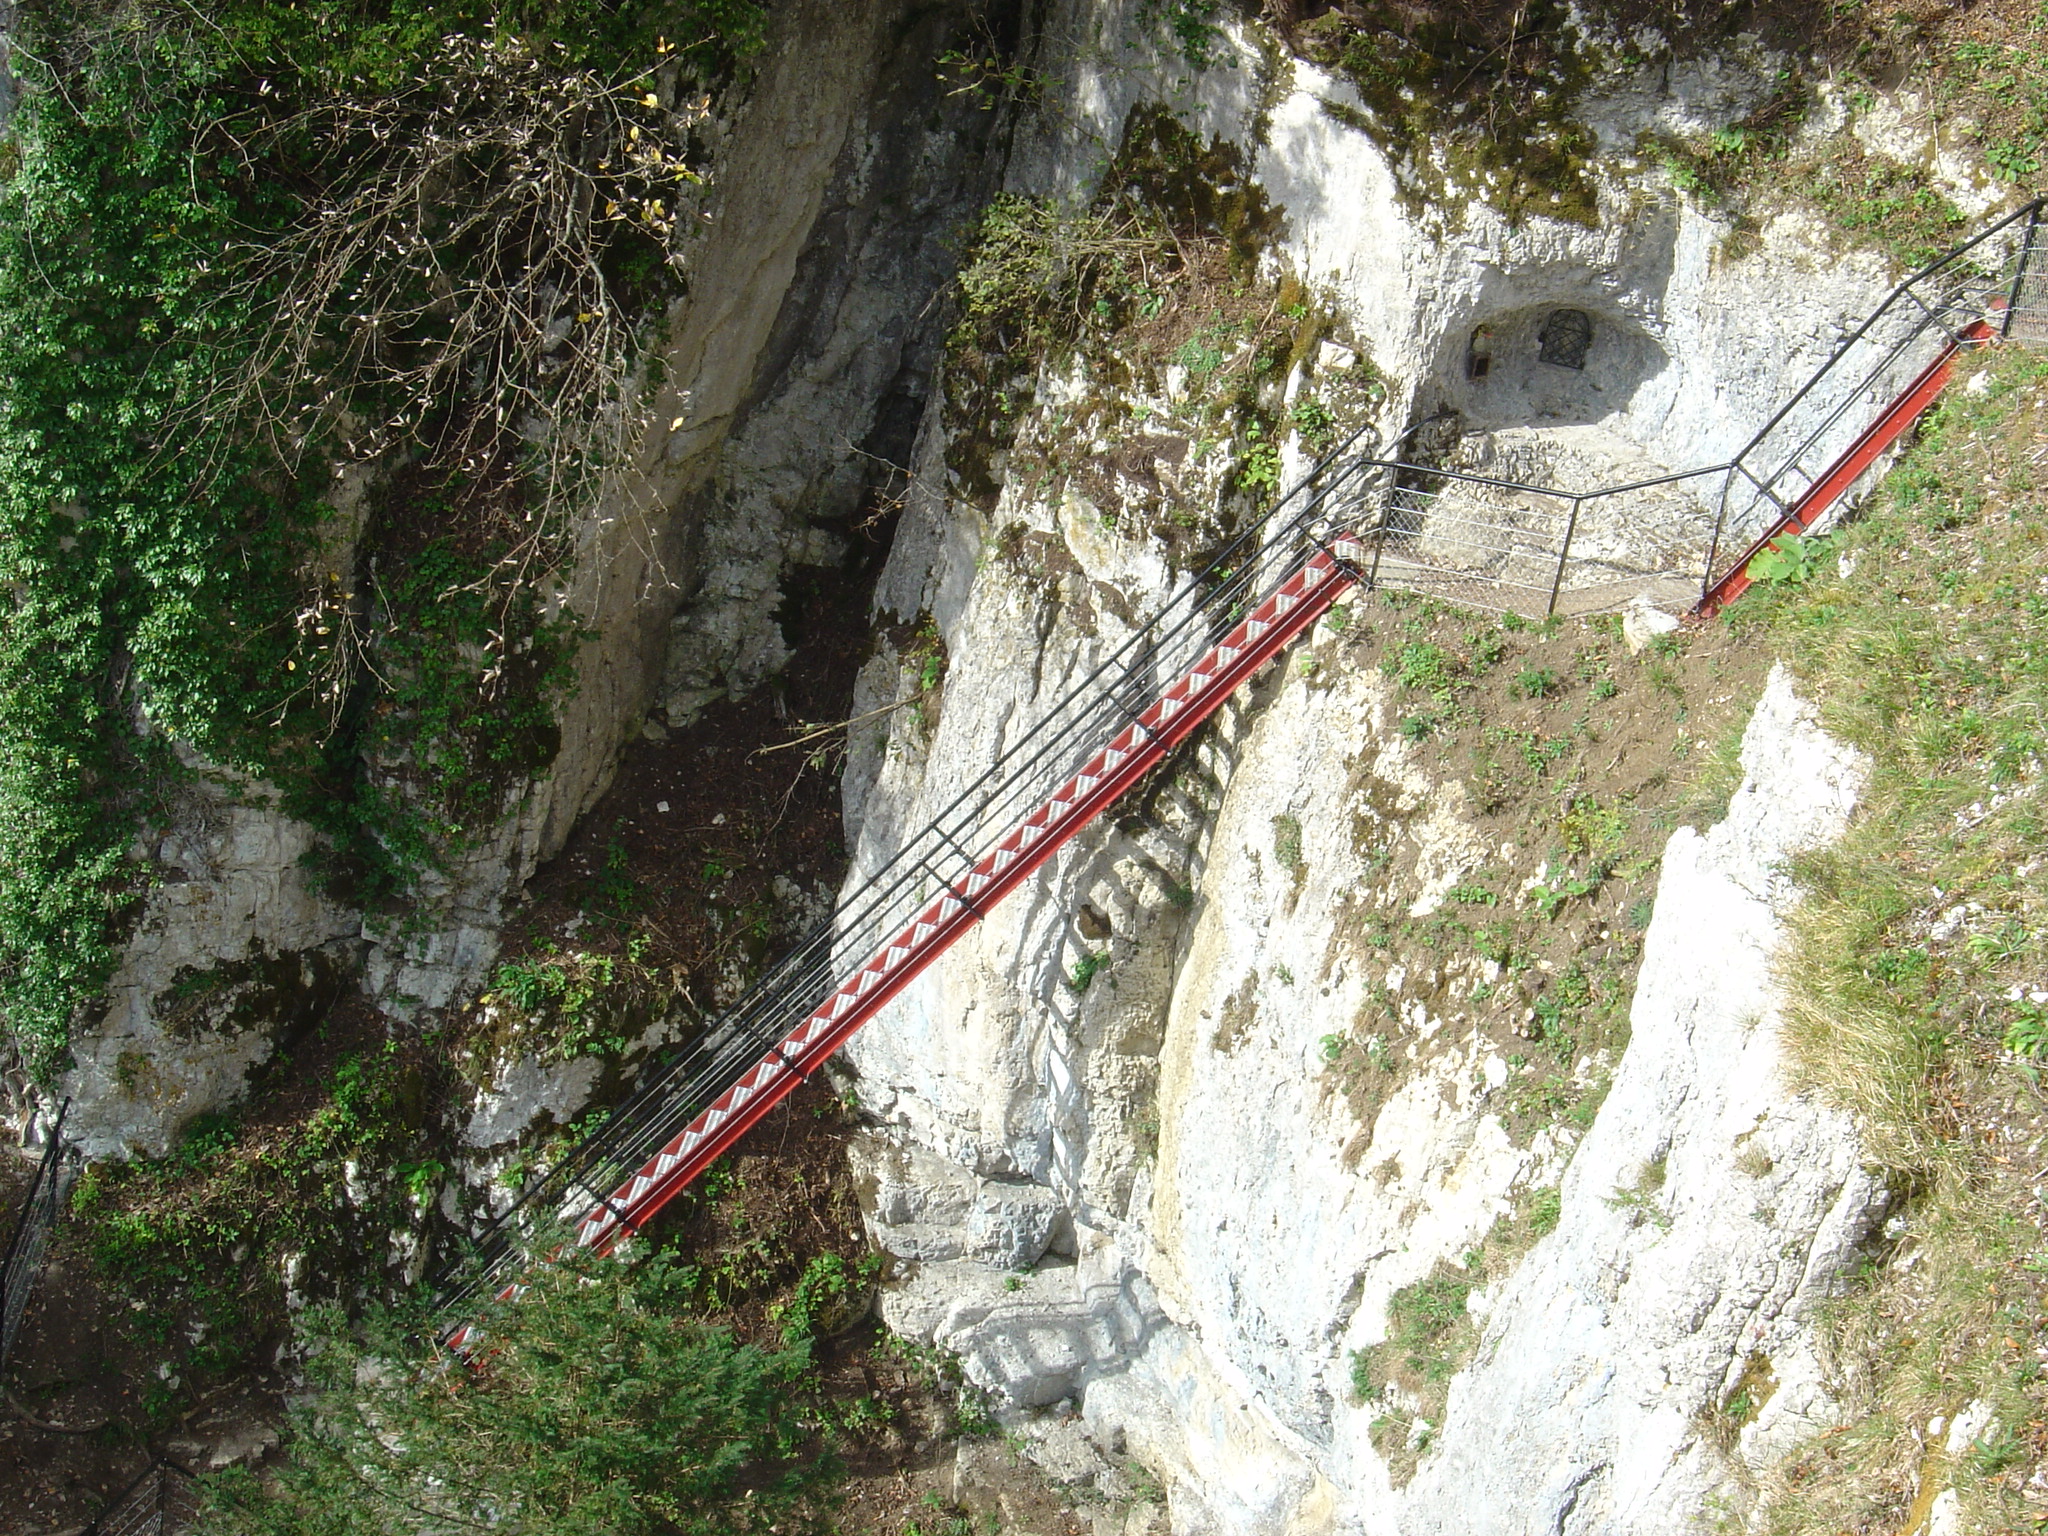 Visiter le Doubs et les échelles de la mort à Charquemont © Wikipedia Commons